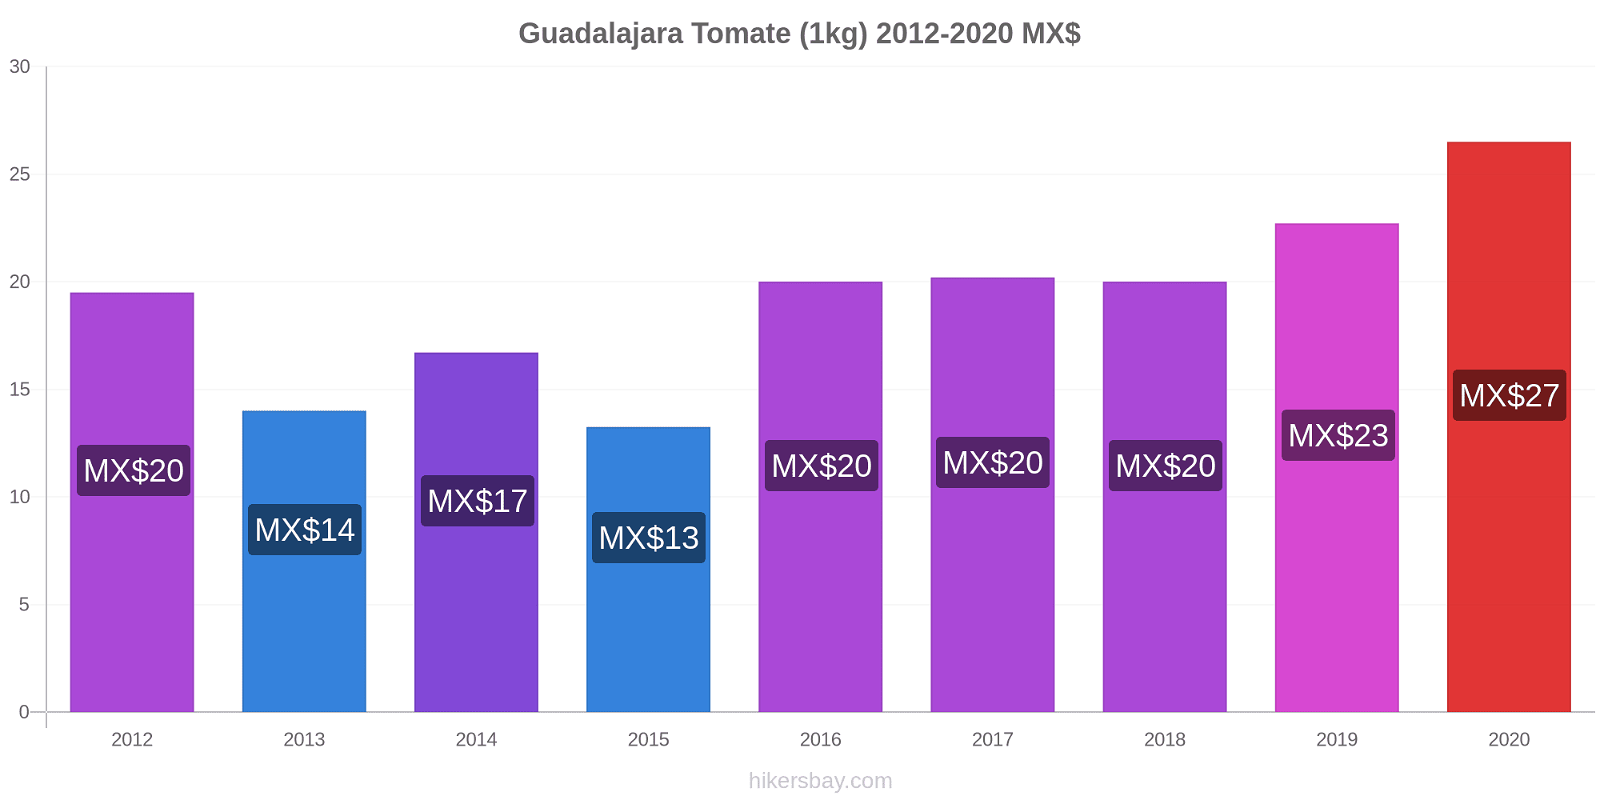 Guadalajara cambios de precios Tomate (1kg) hikersbay.com